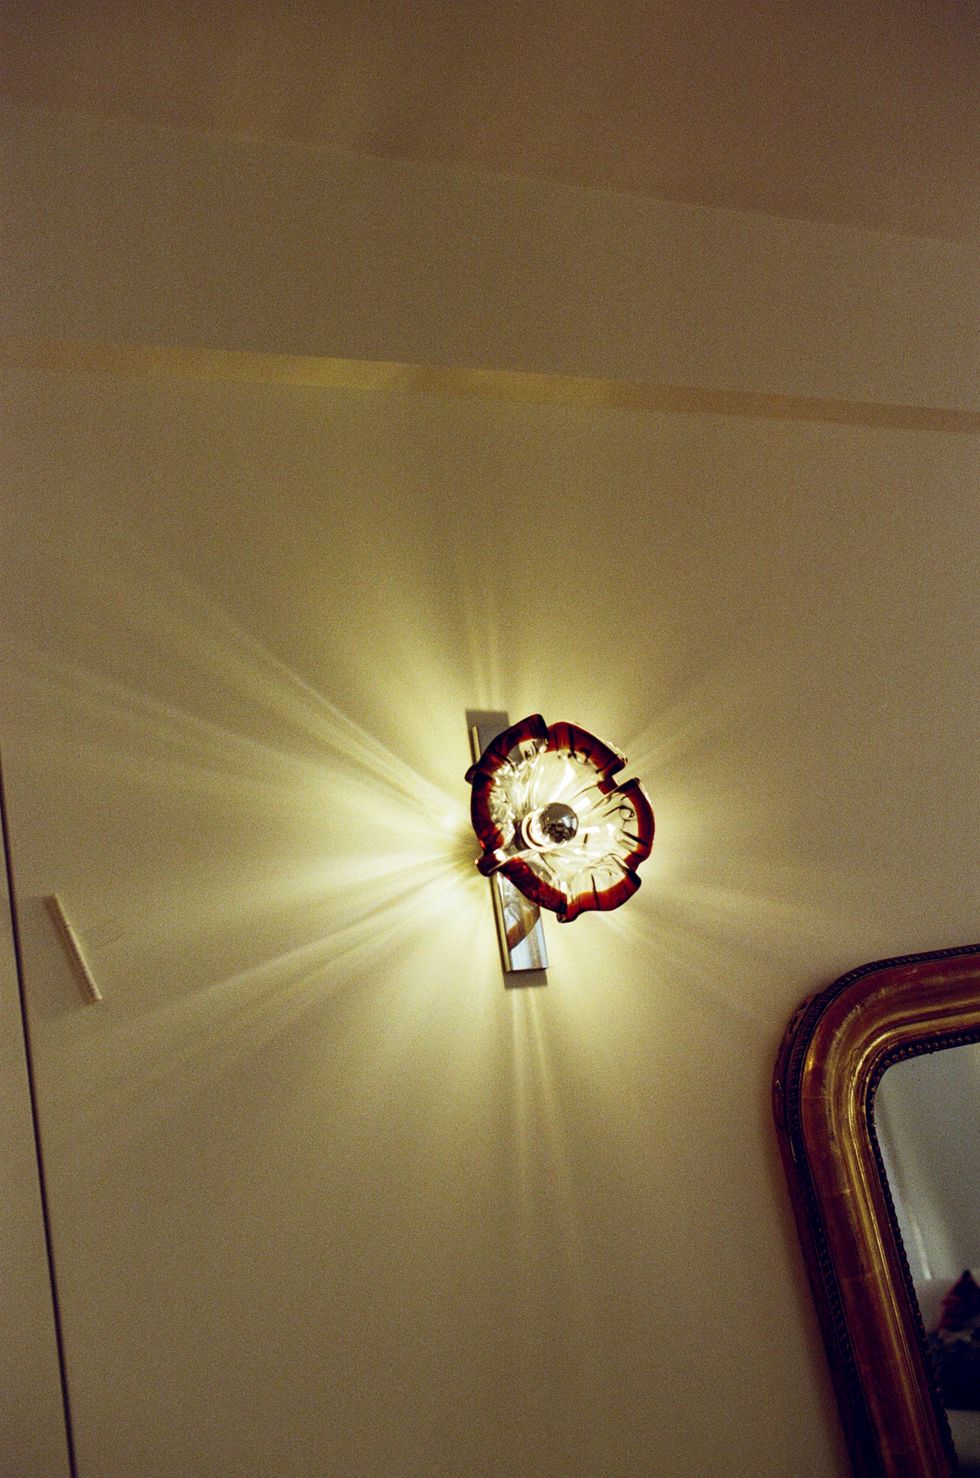 a fan on a ceiling